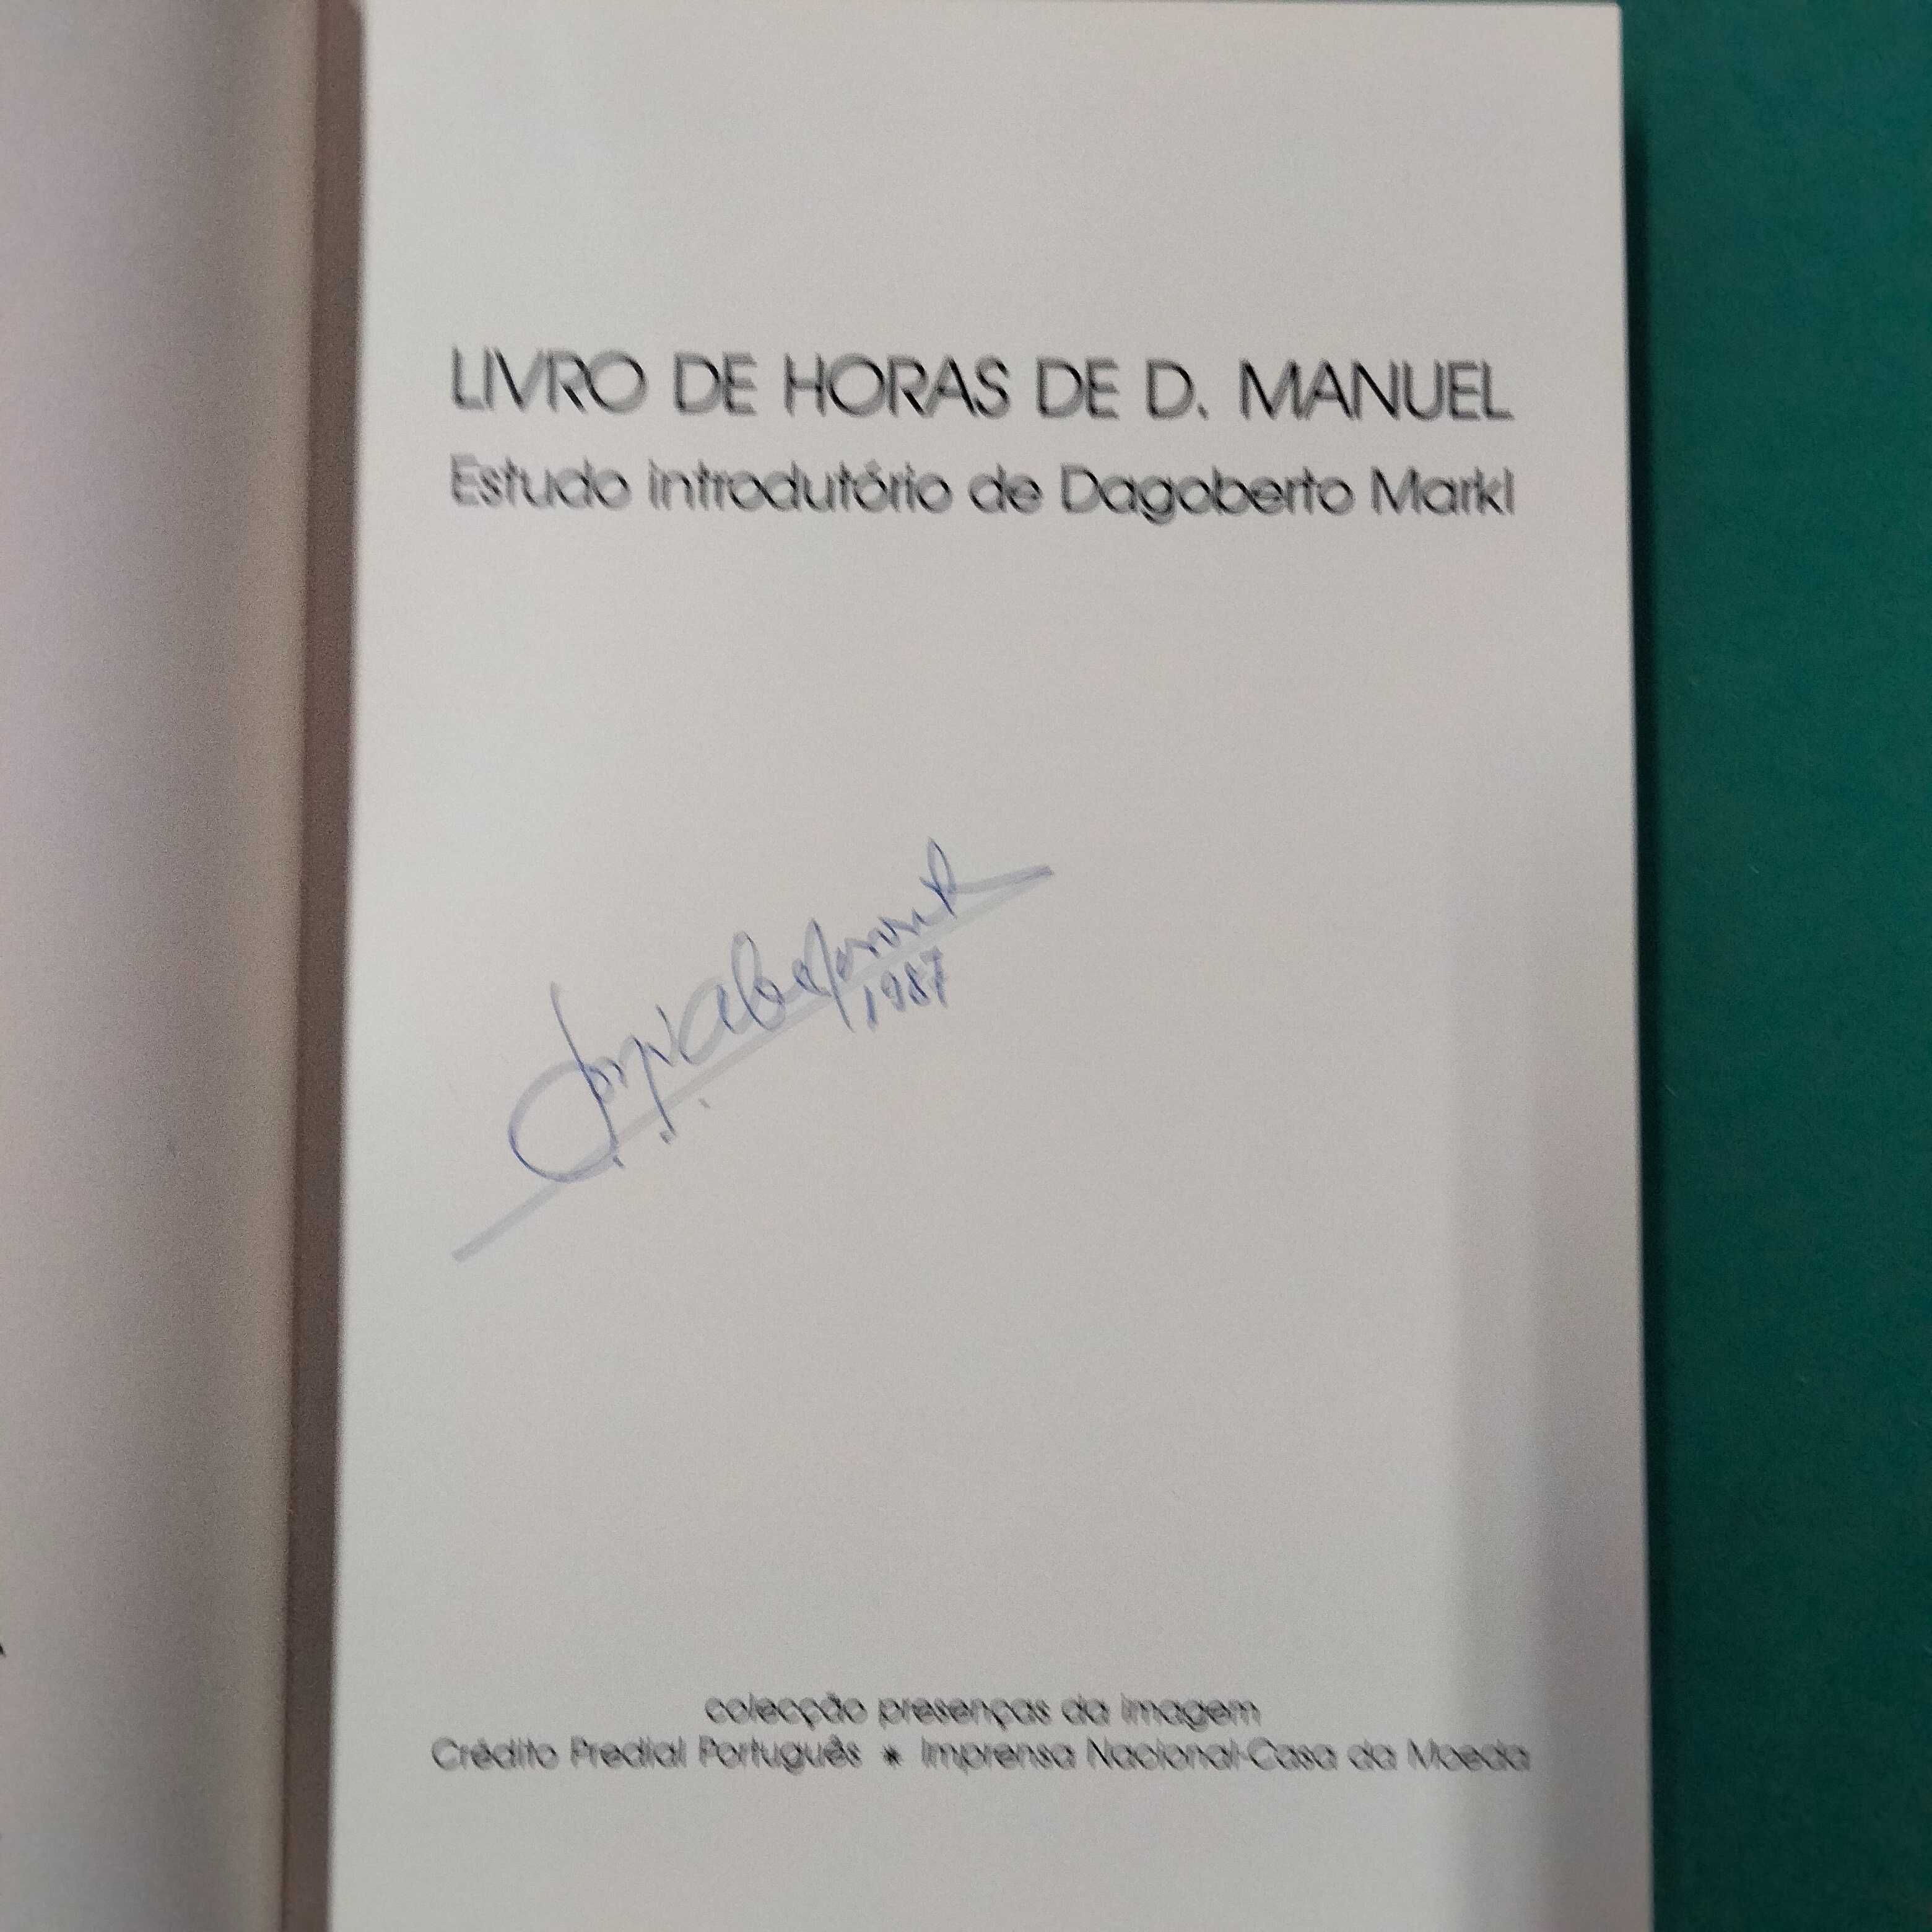 Livro de Horas de D. Manuel